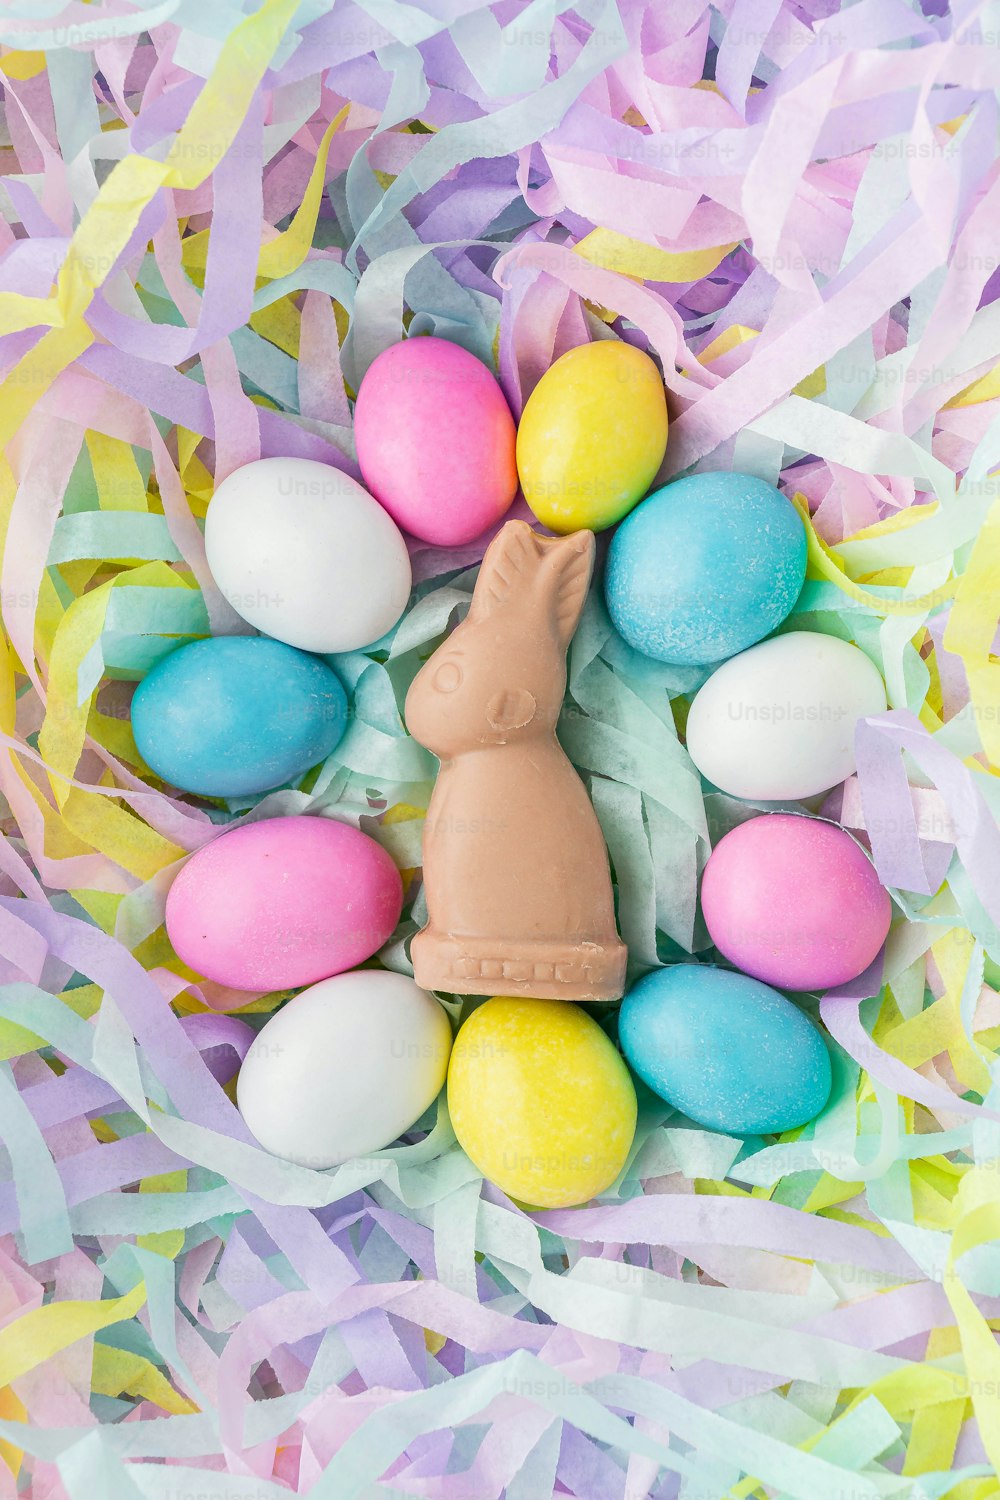 Un conejito de chocolate en una canasta de huevos de Pascua